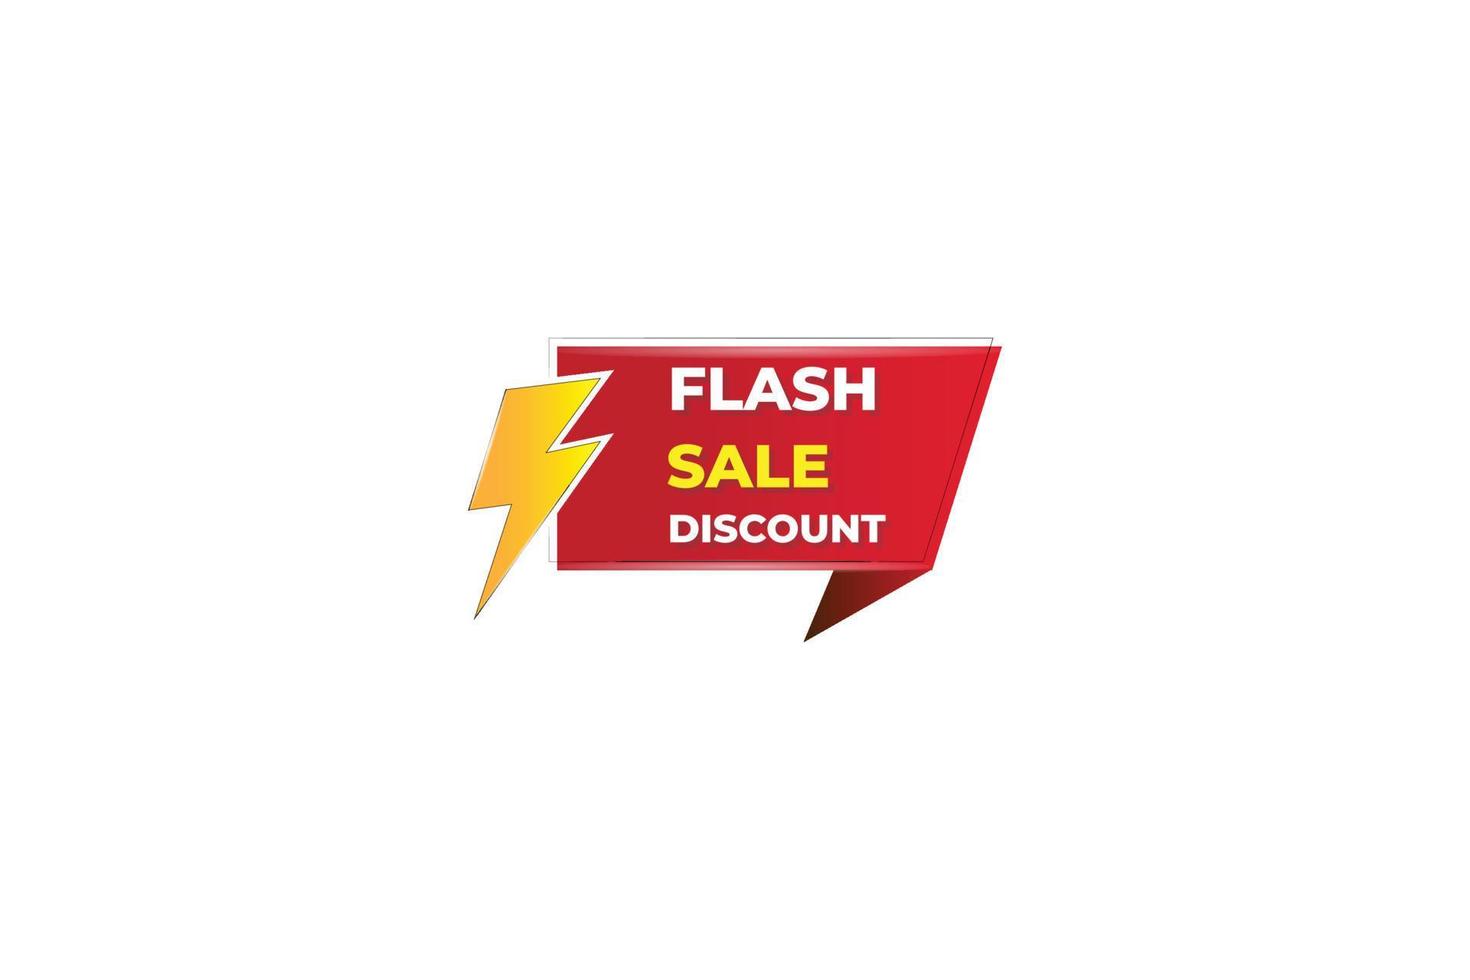 Flash sale banner promotion tag design for marketing illustration vector